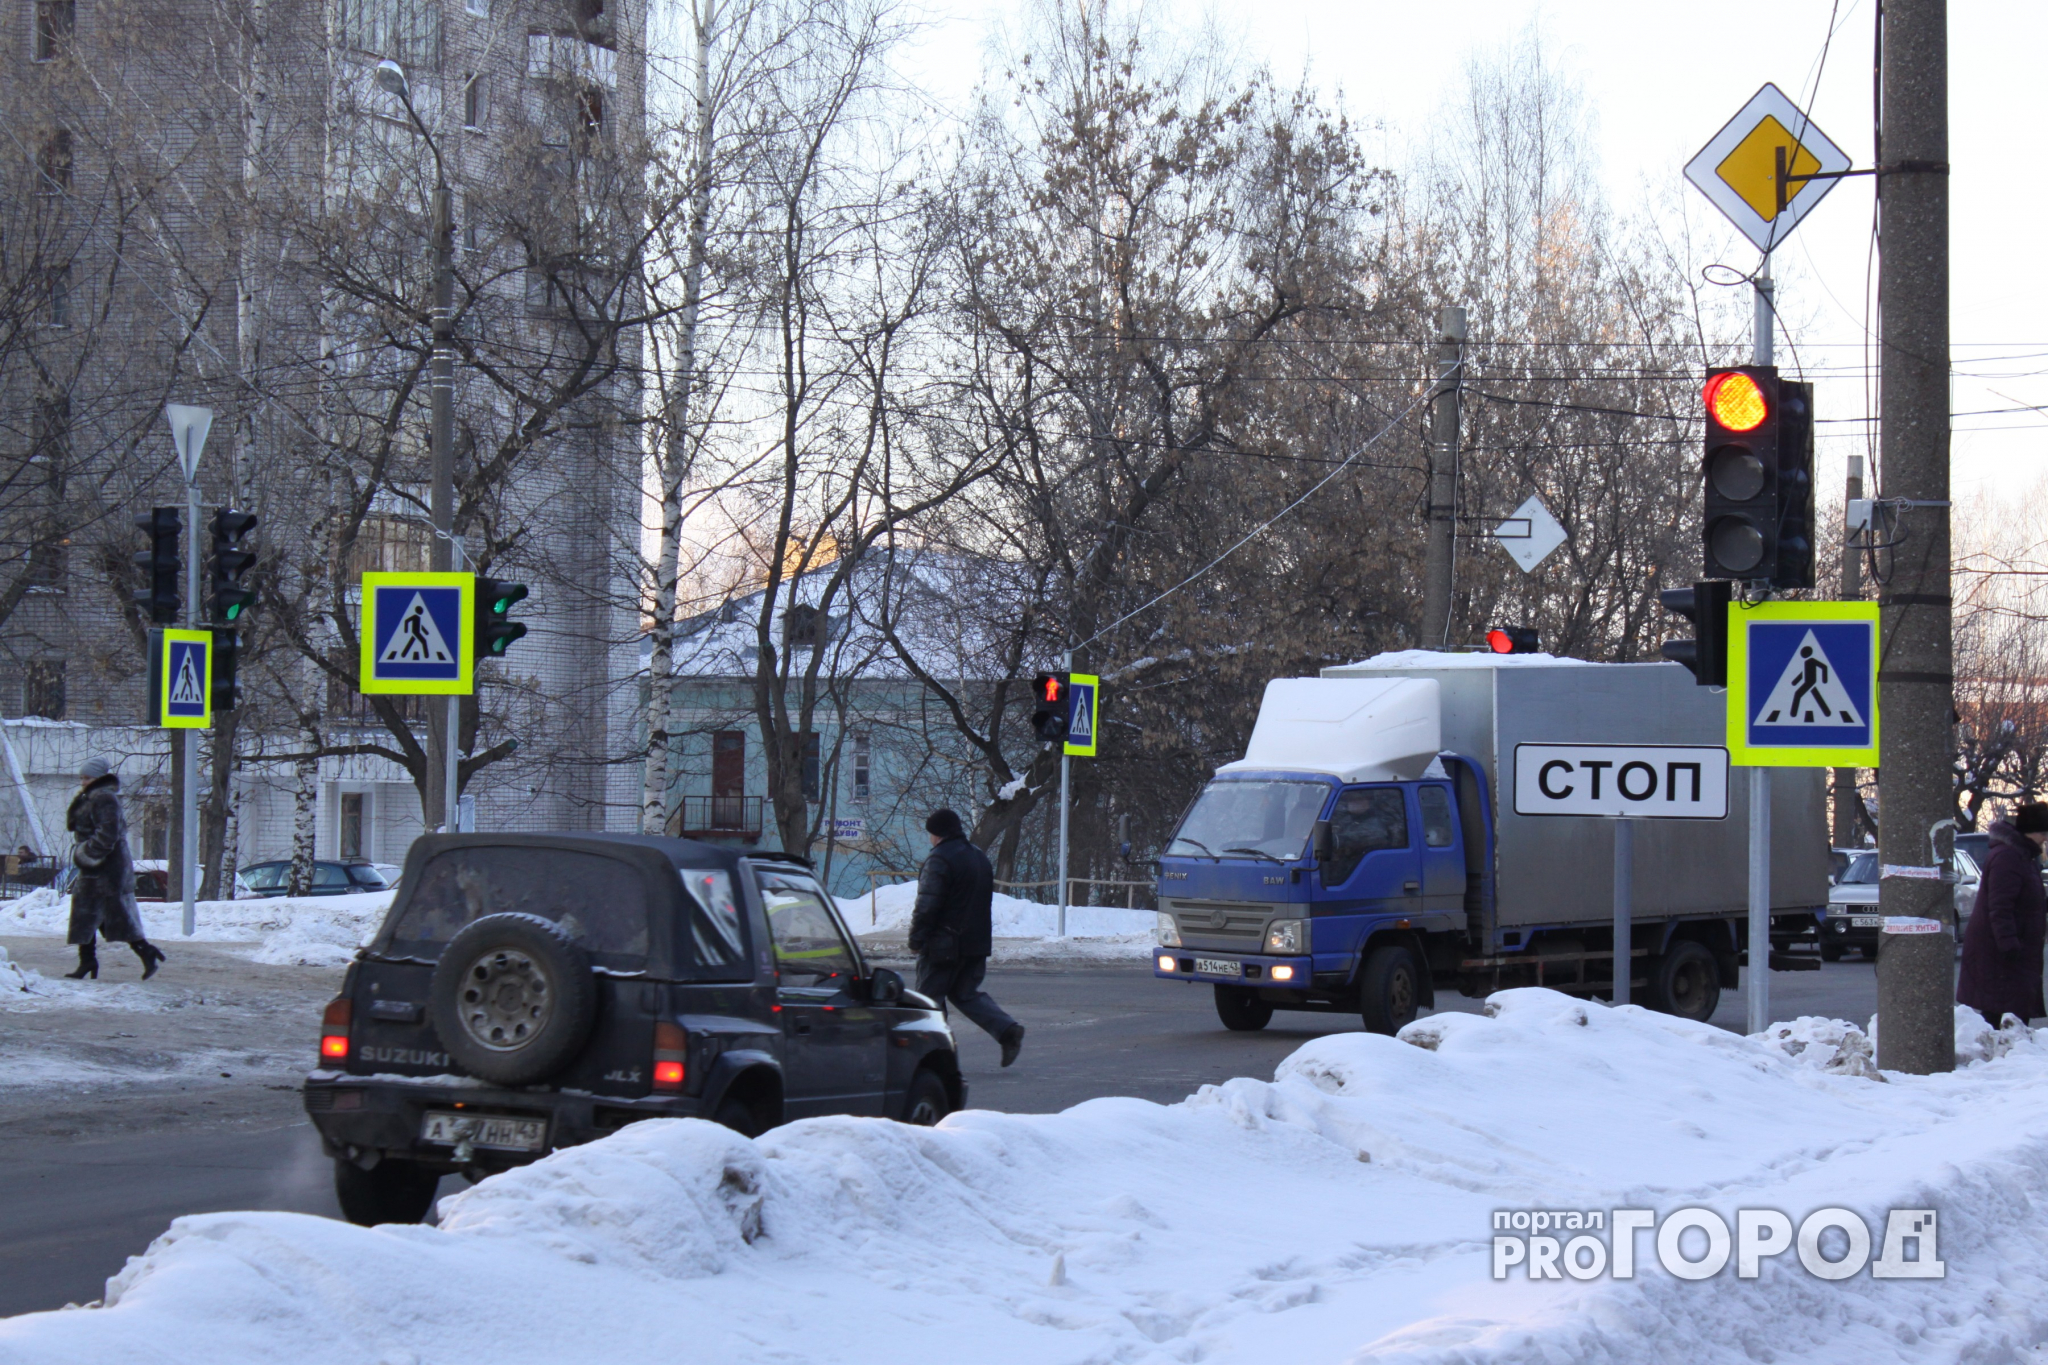 Новости России: в стране появится несколько десятков новых дорожных знаков